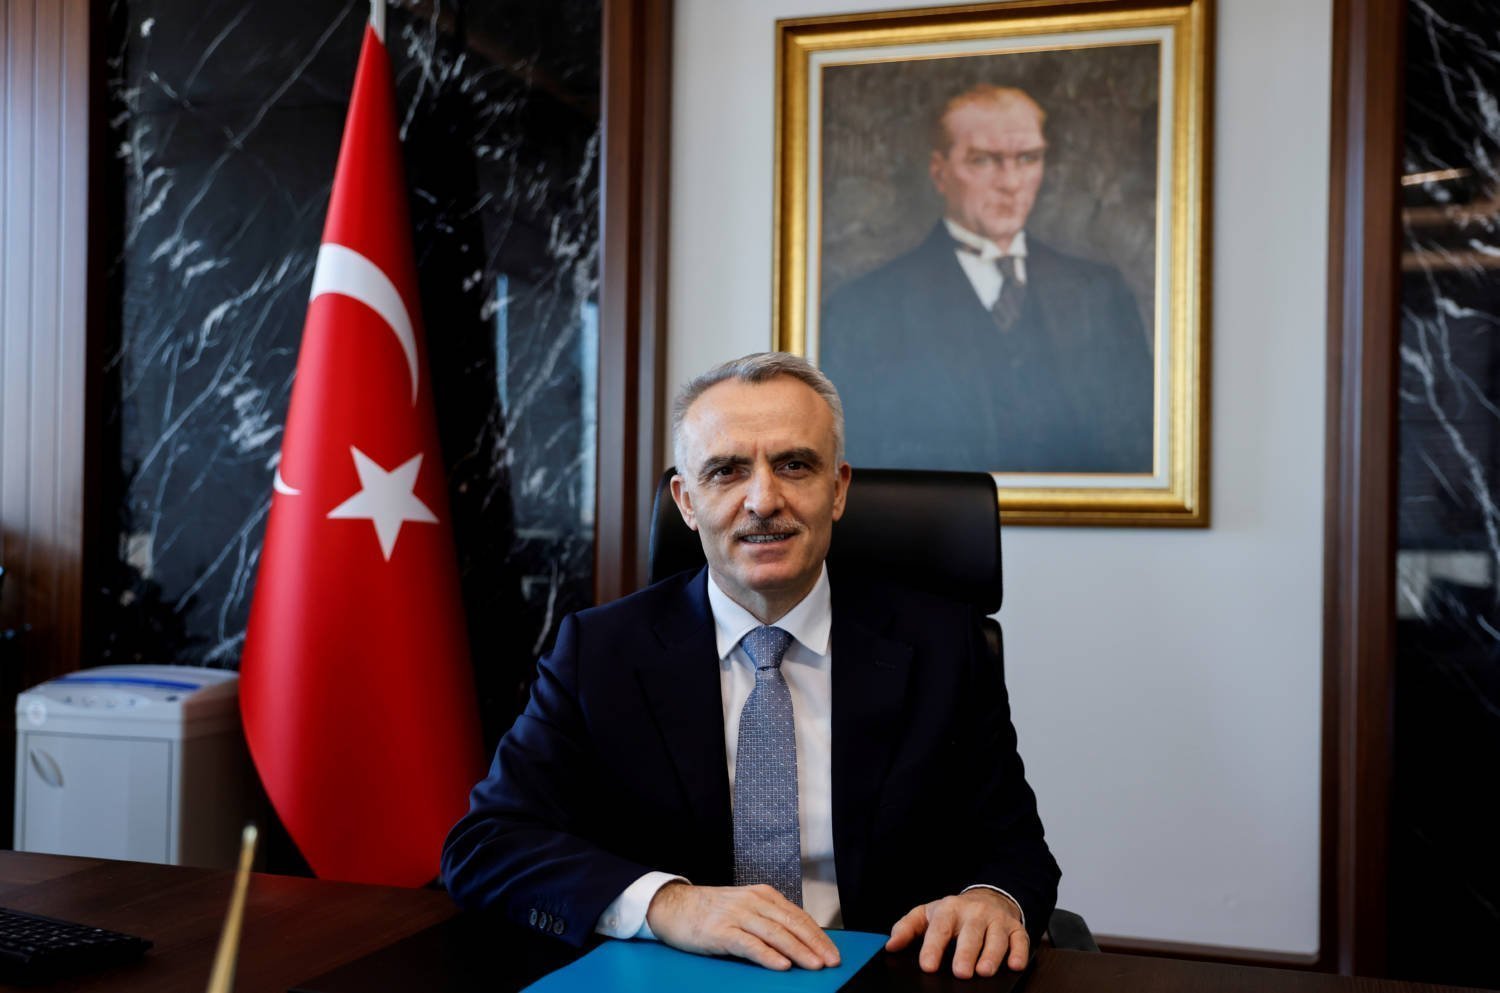 Ο Naci Agbal ελπίζει ότι αυτή τη φορά είναι διαφορετική στην κεντρική τράπεζα της Τουρκίας